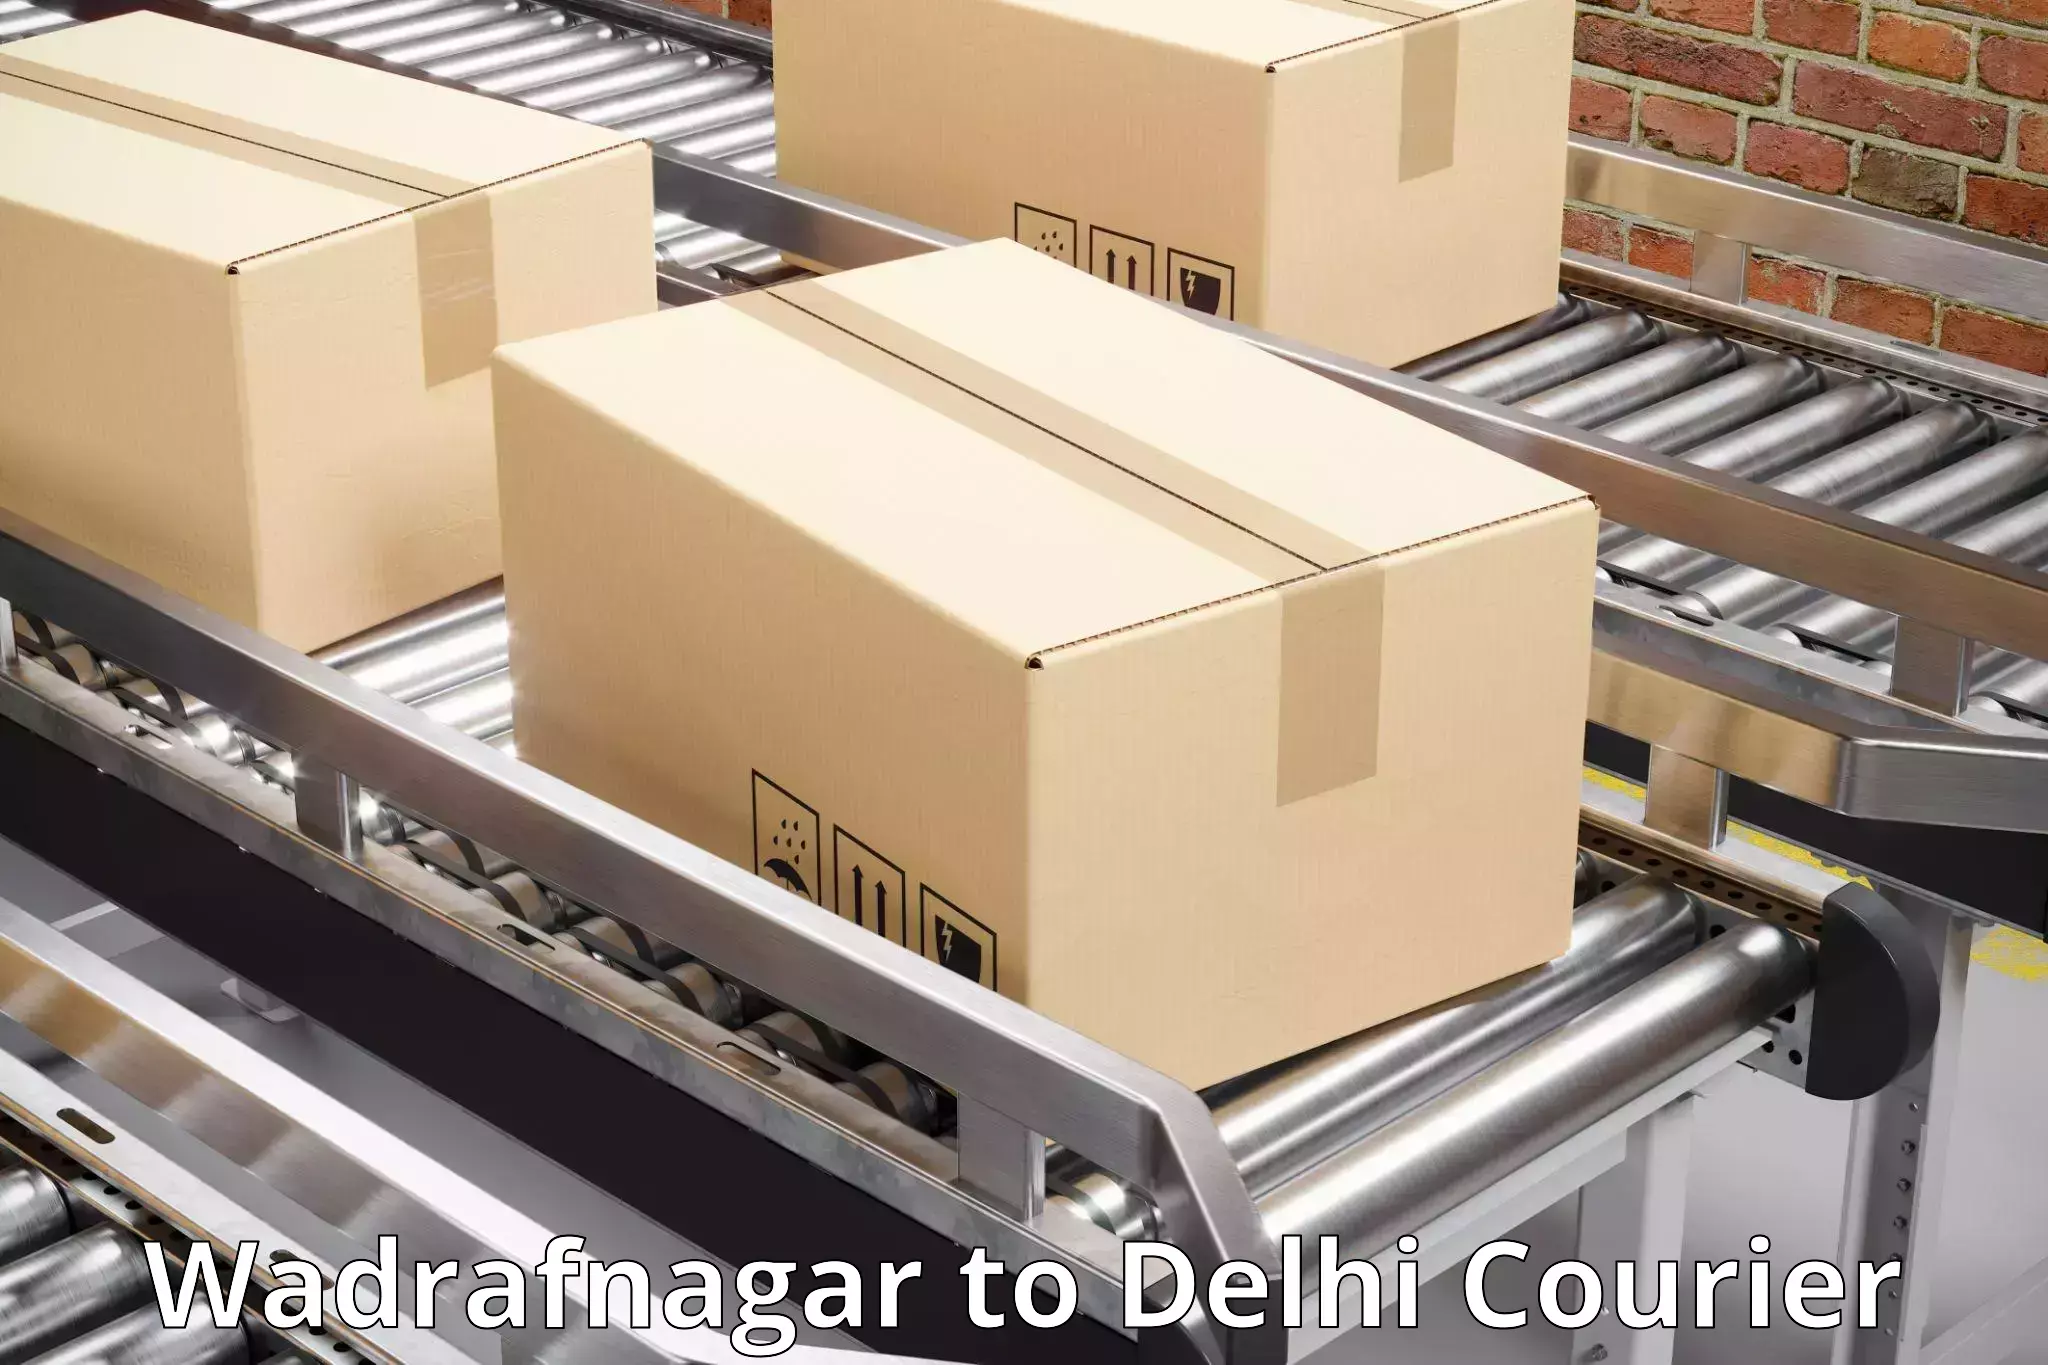 Multi-carrier shipping Wadrafnagar to Jawaharlal Nehru University New Delhi